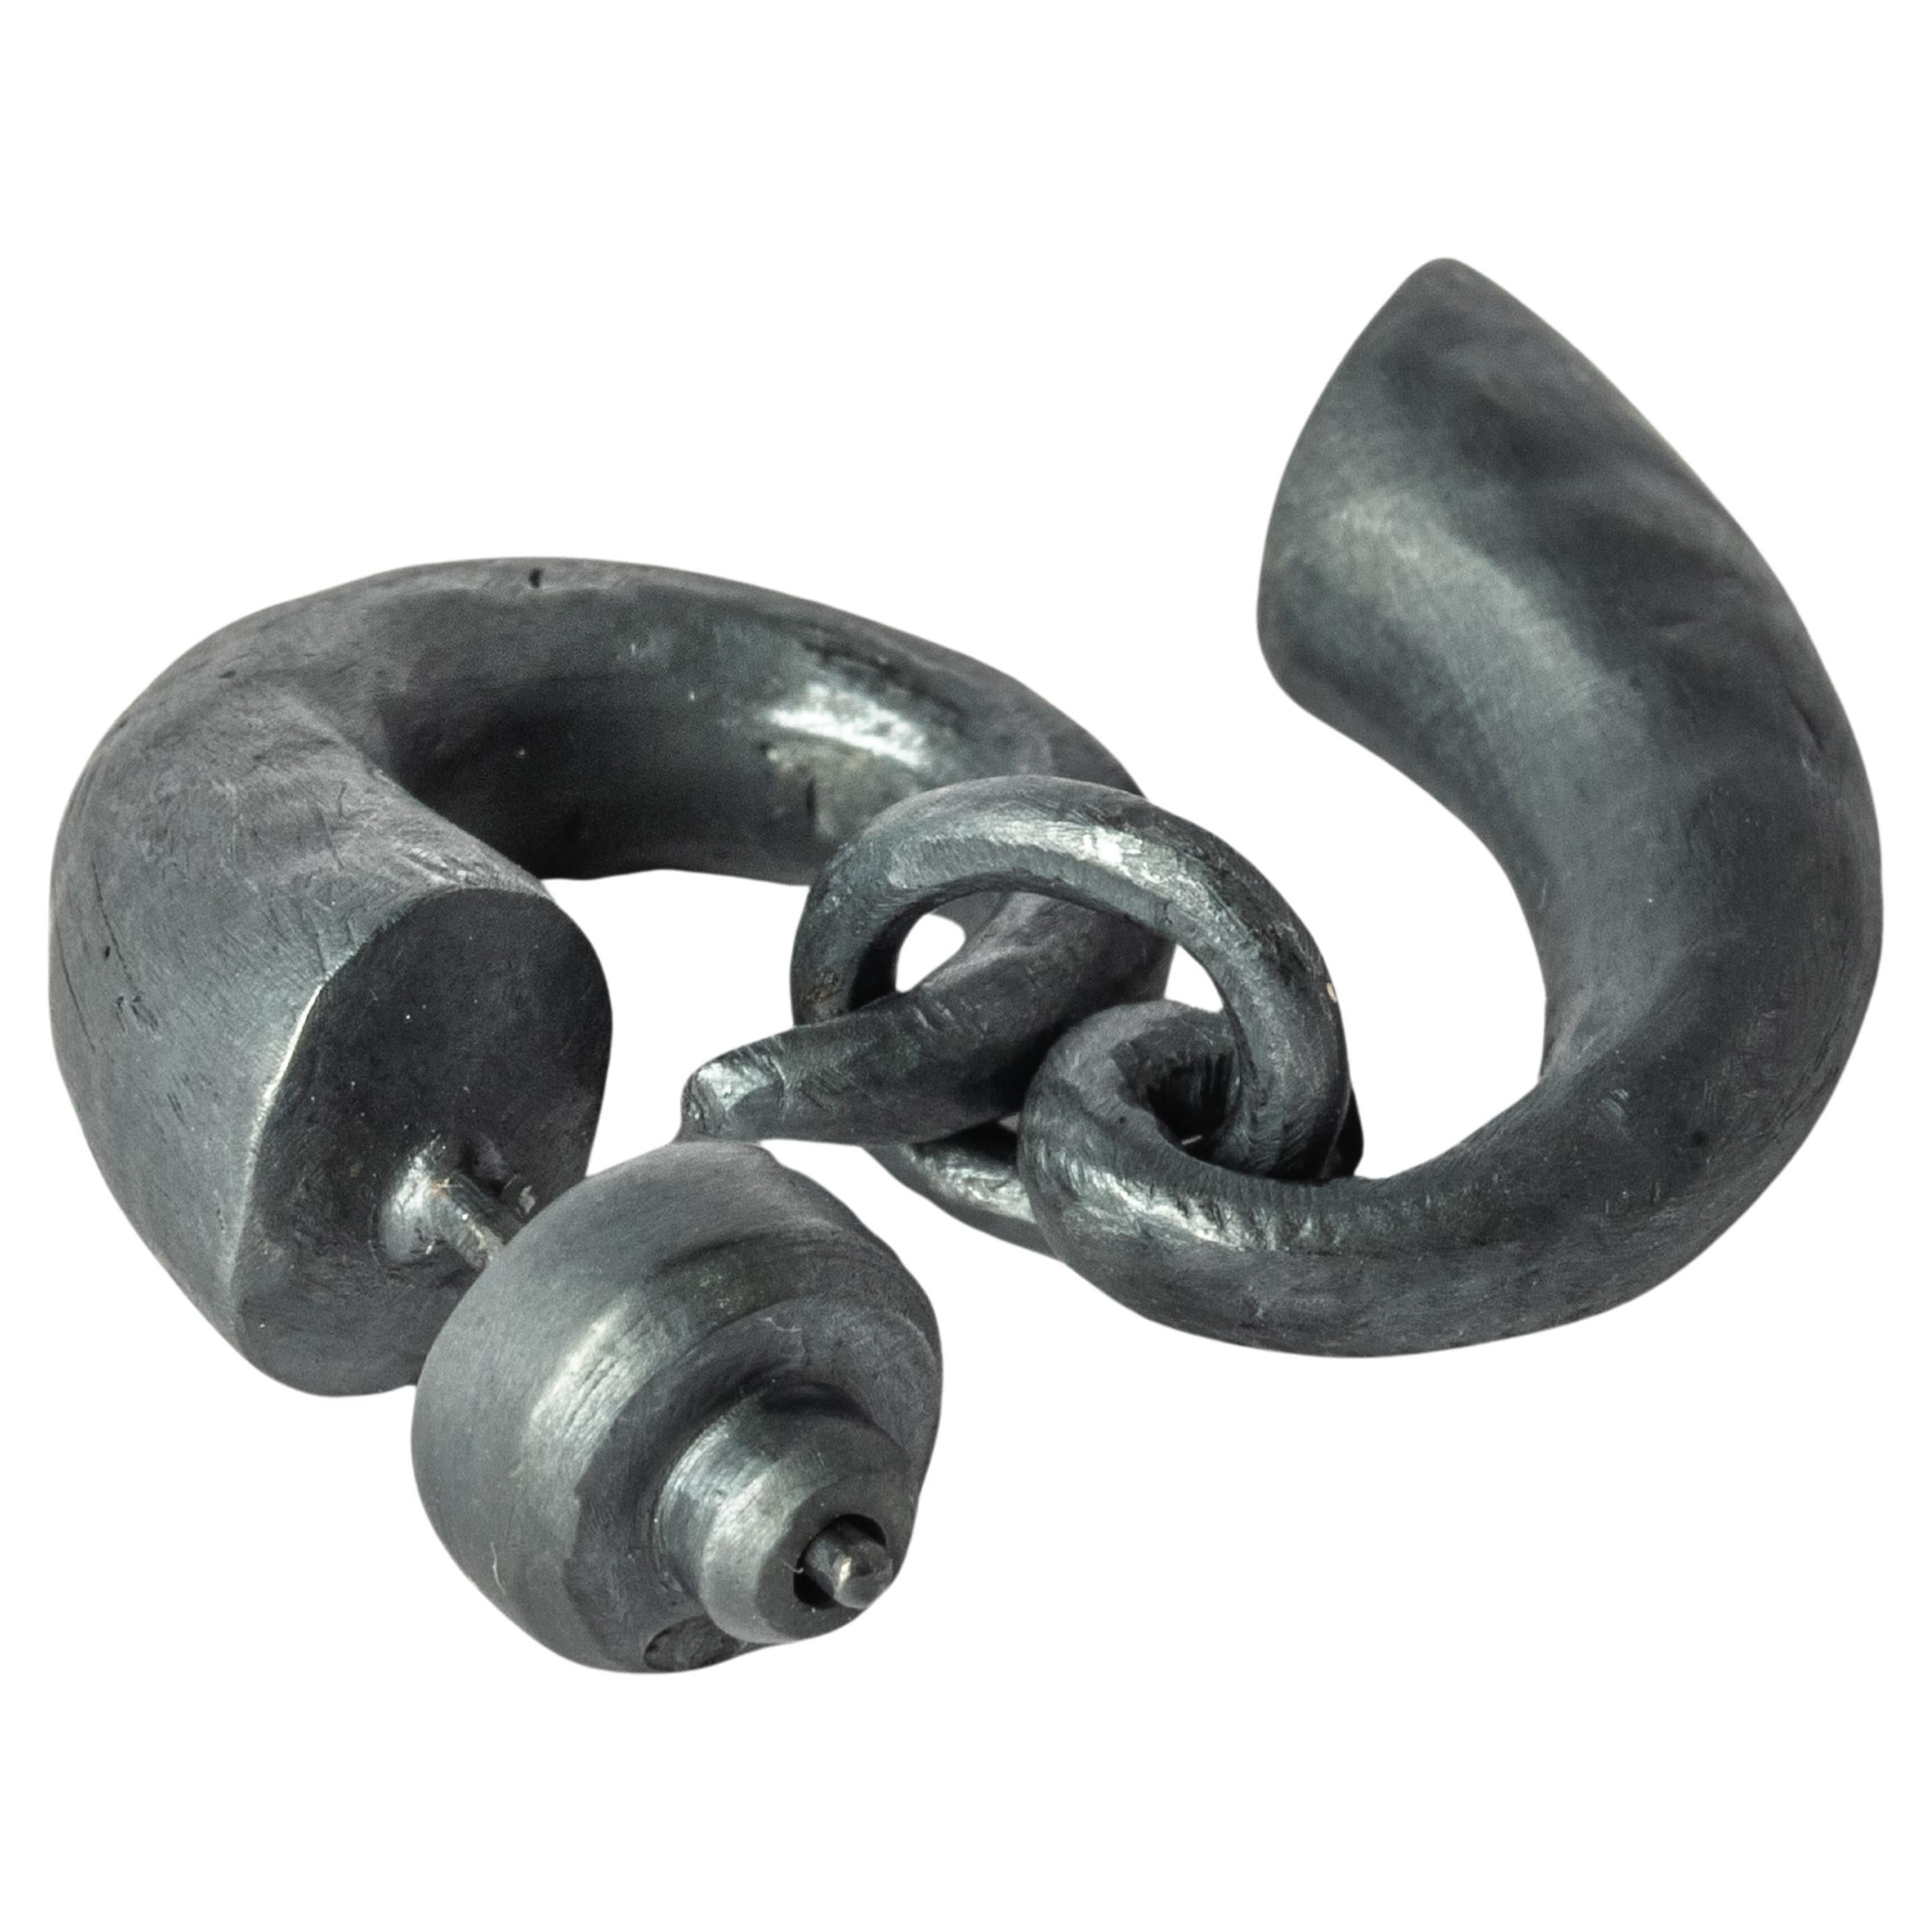 Boucle d'oreille pendante en forme de Horn en argent sterling oxydé. Cette finition peut s'estomper avec le temps, ce qui peut être considéré comme une amélioration.
Vendu en une seule pièce.